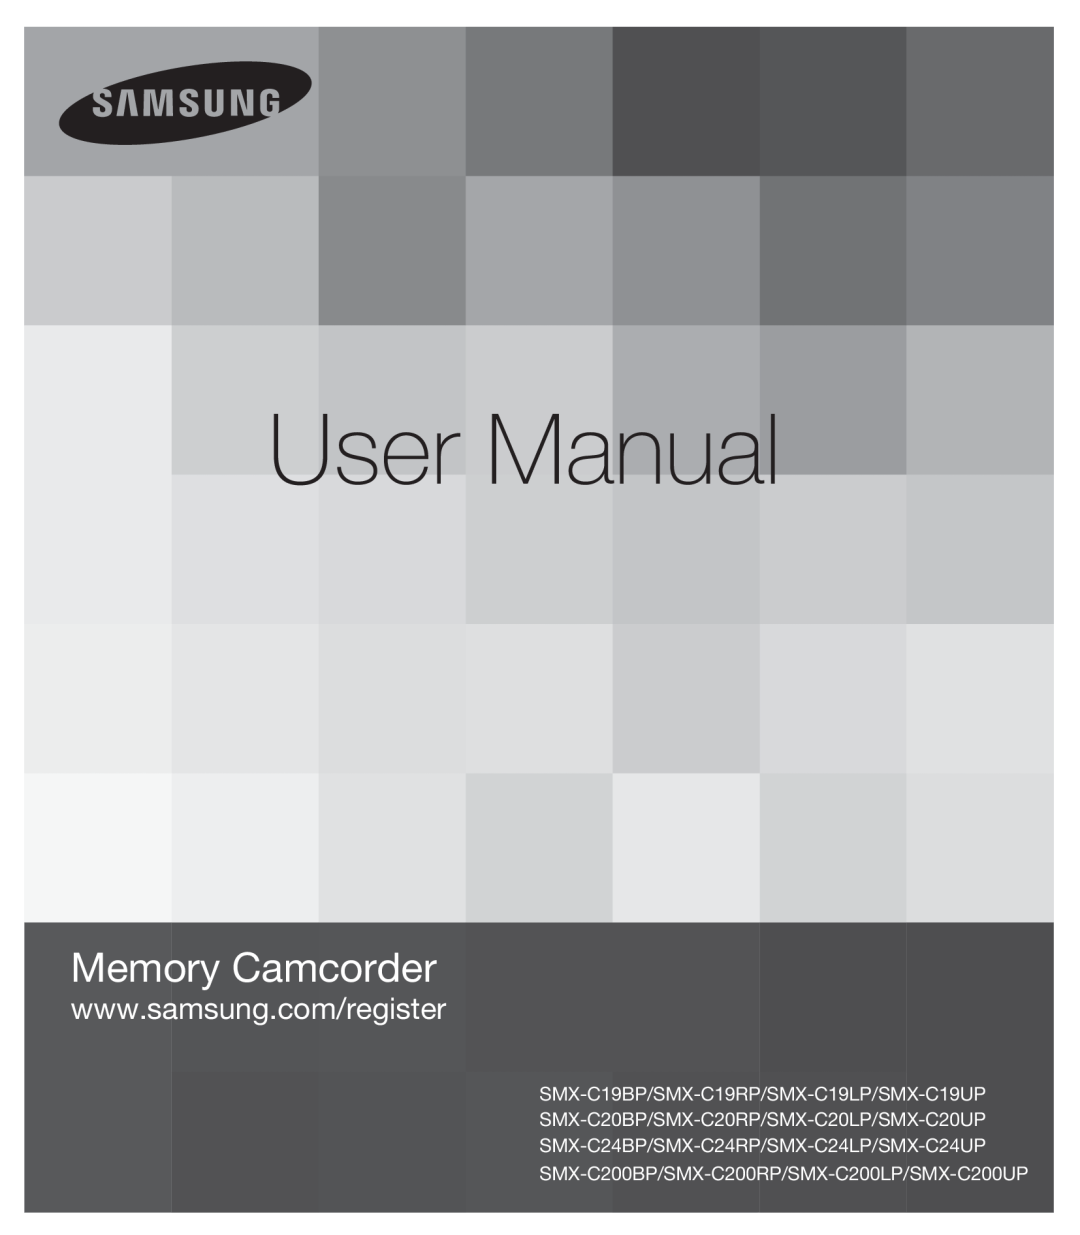 Samsung SMX-C200LP/EDC, SMX-C24BP/EDC manual User Manual, Memory Camcorder, SMX-C19BP/SMX-C19RP/SMX-C19LP/SMX-C19UP 